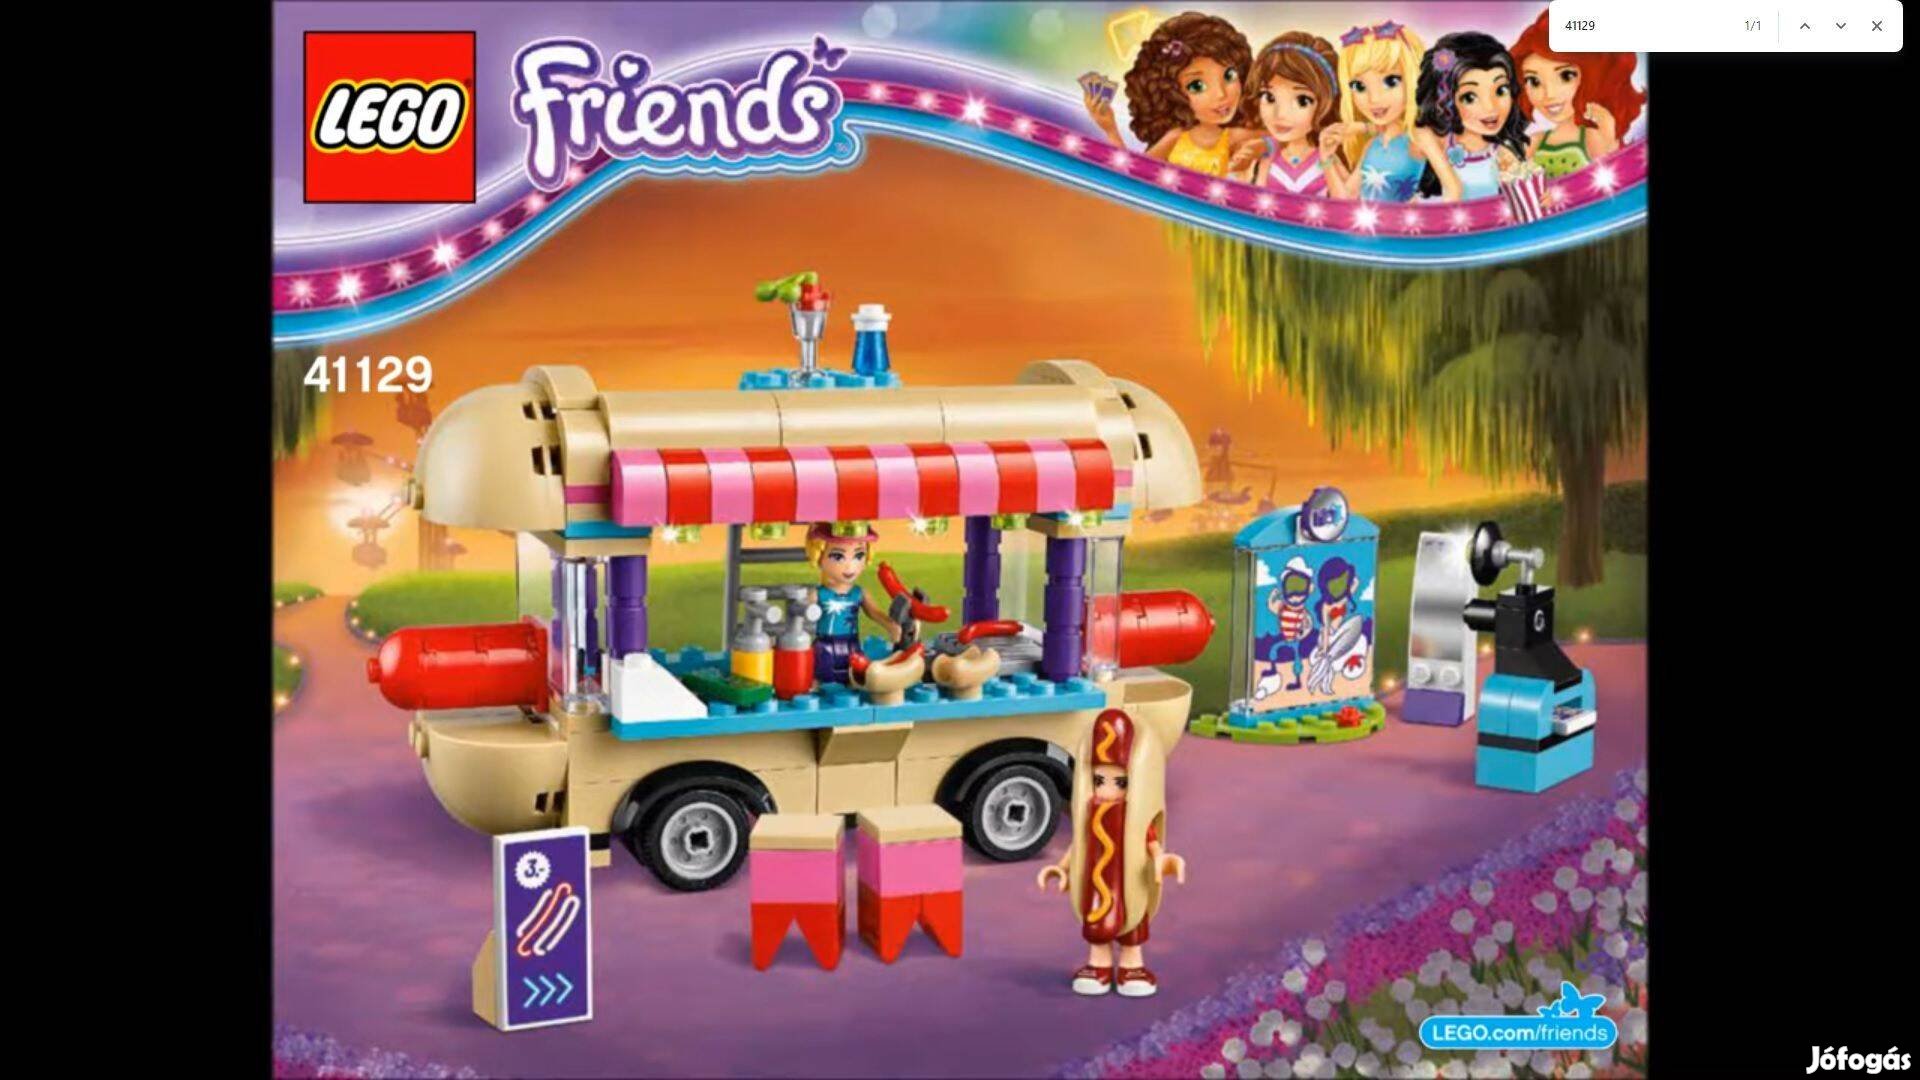 Legofriends 41129 Vidámparki Hotdog elárusító kocsi